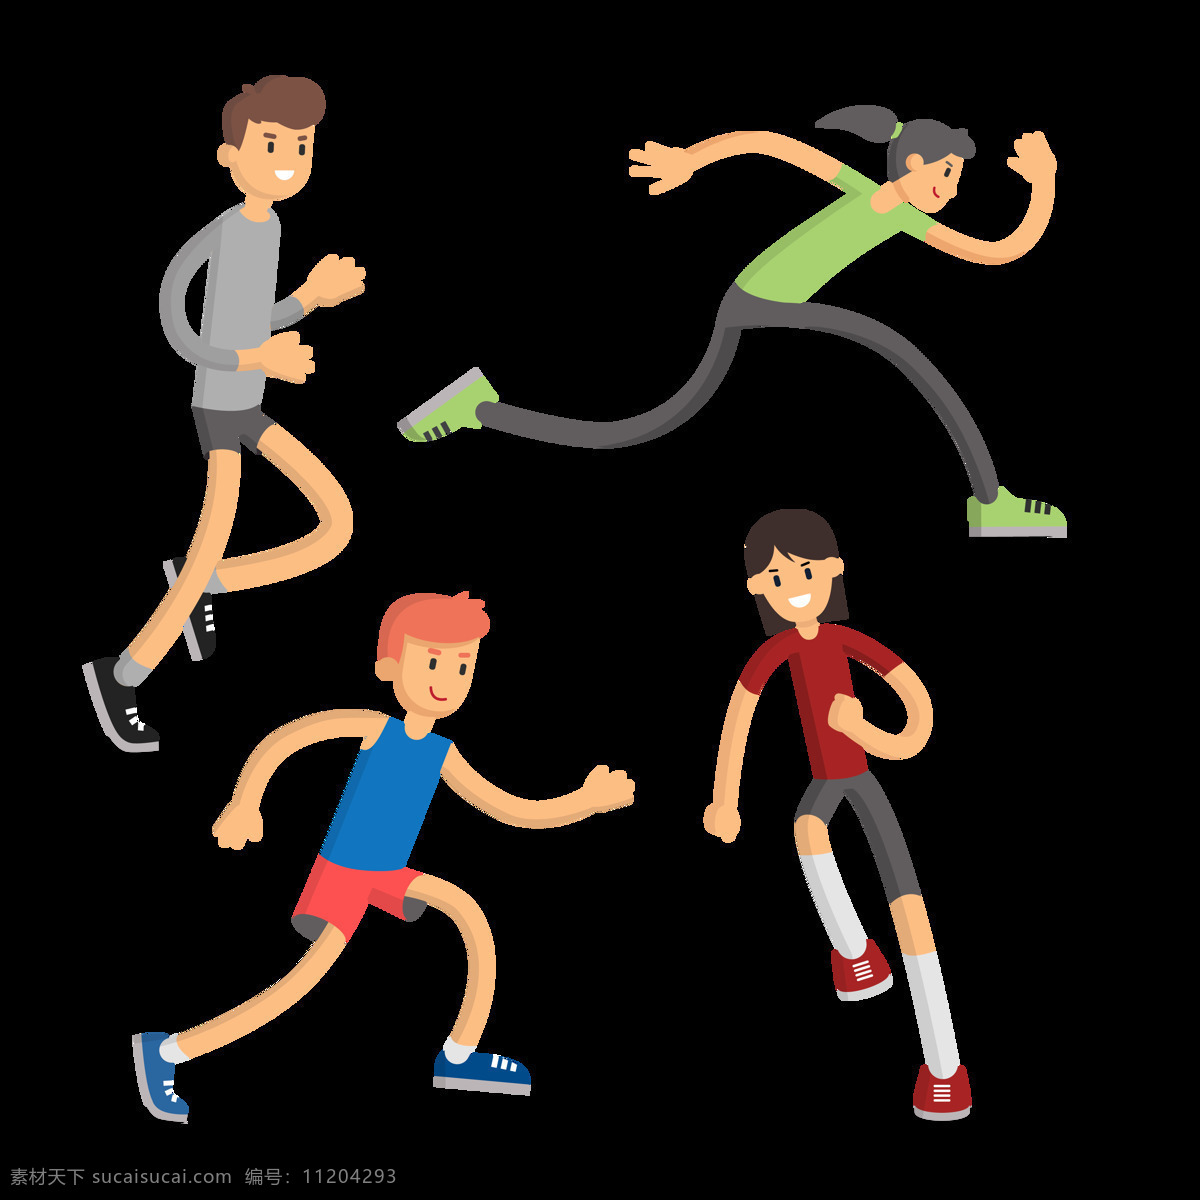 可爱 跑步 小孩 免 抠 透明 图 层 卡通奔跑的人 运动会 励志 狂跑 起跑 狂欢人群 奔跑吧少年 体育素材 奔跑剪影 跑步的人 奔跑素材 运动人物 卡通运动 跑步人物